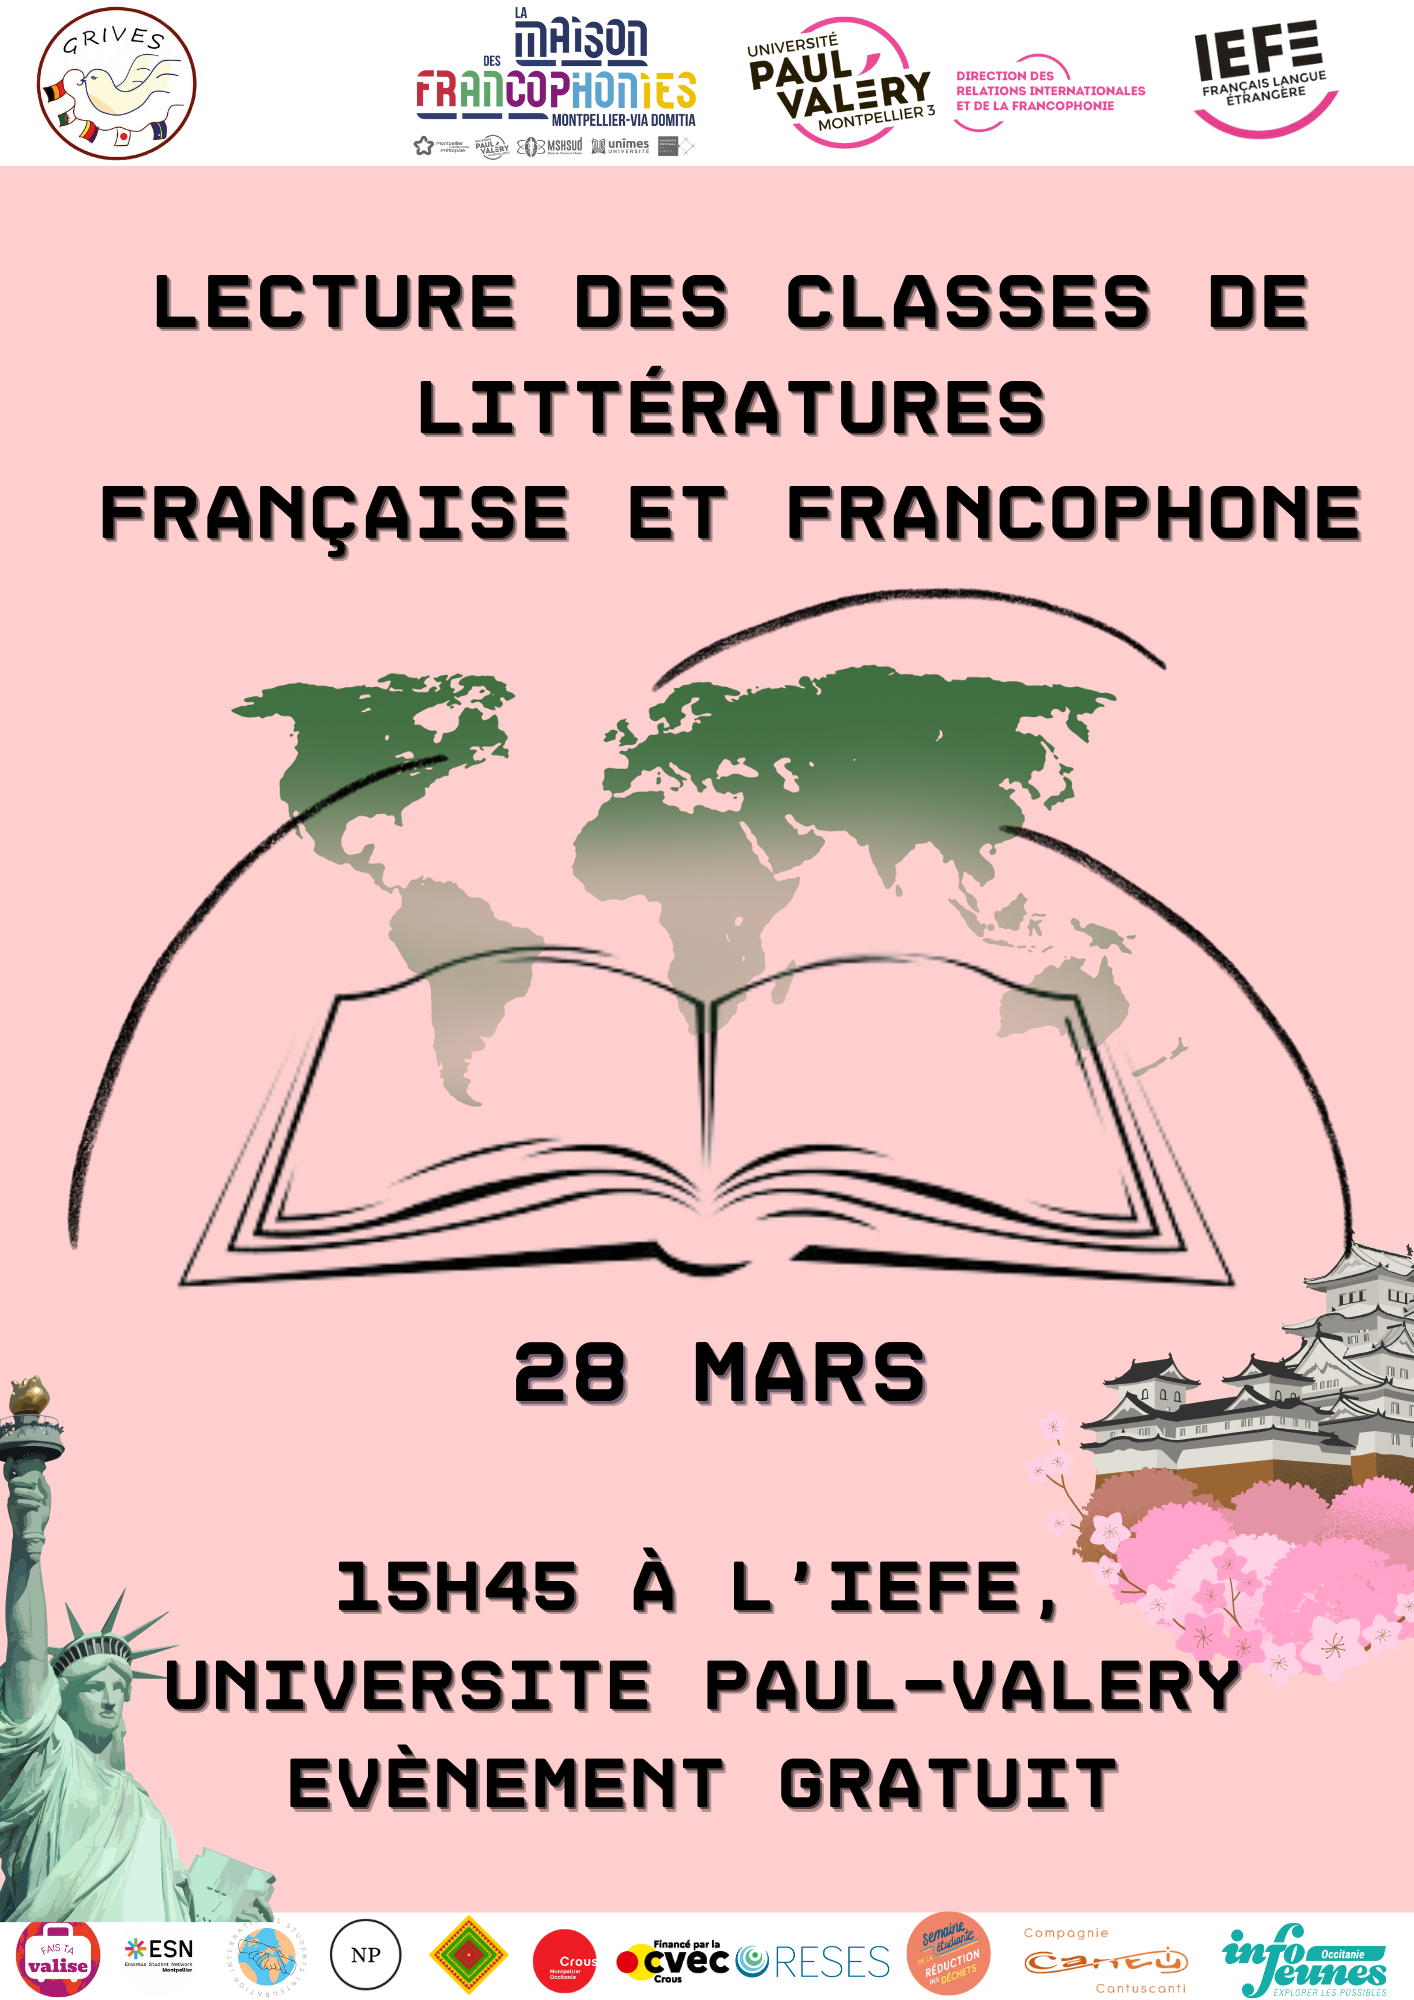 Classes de littératures française et francophone